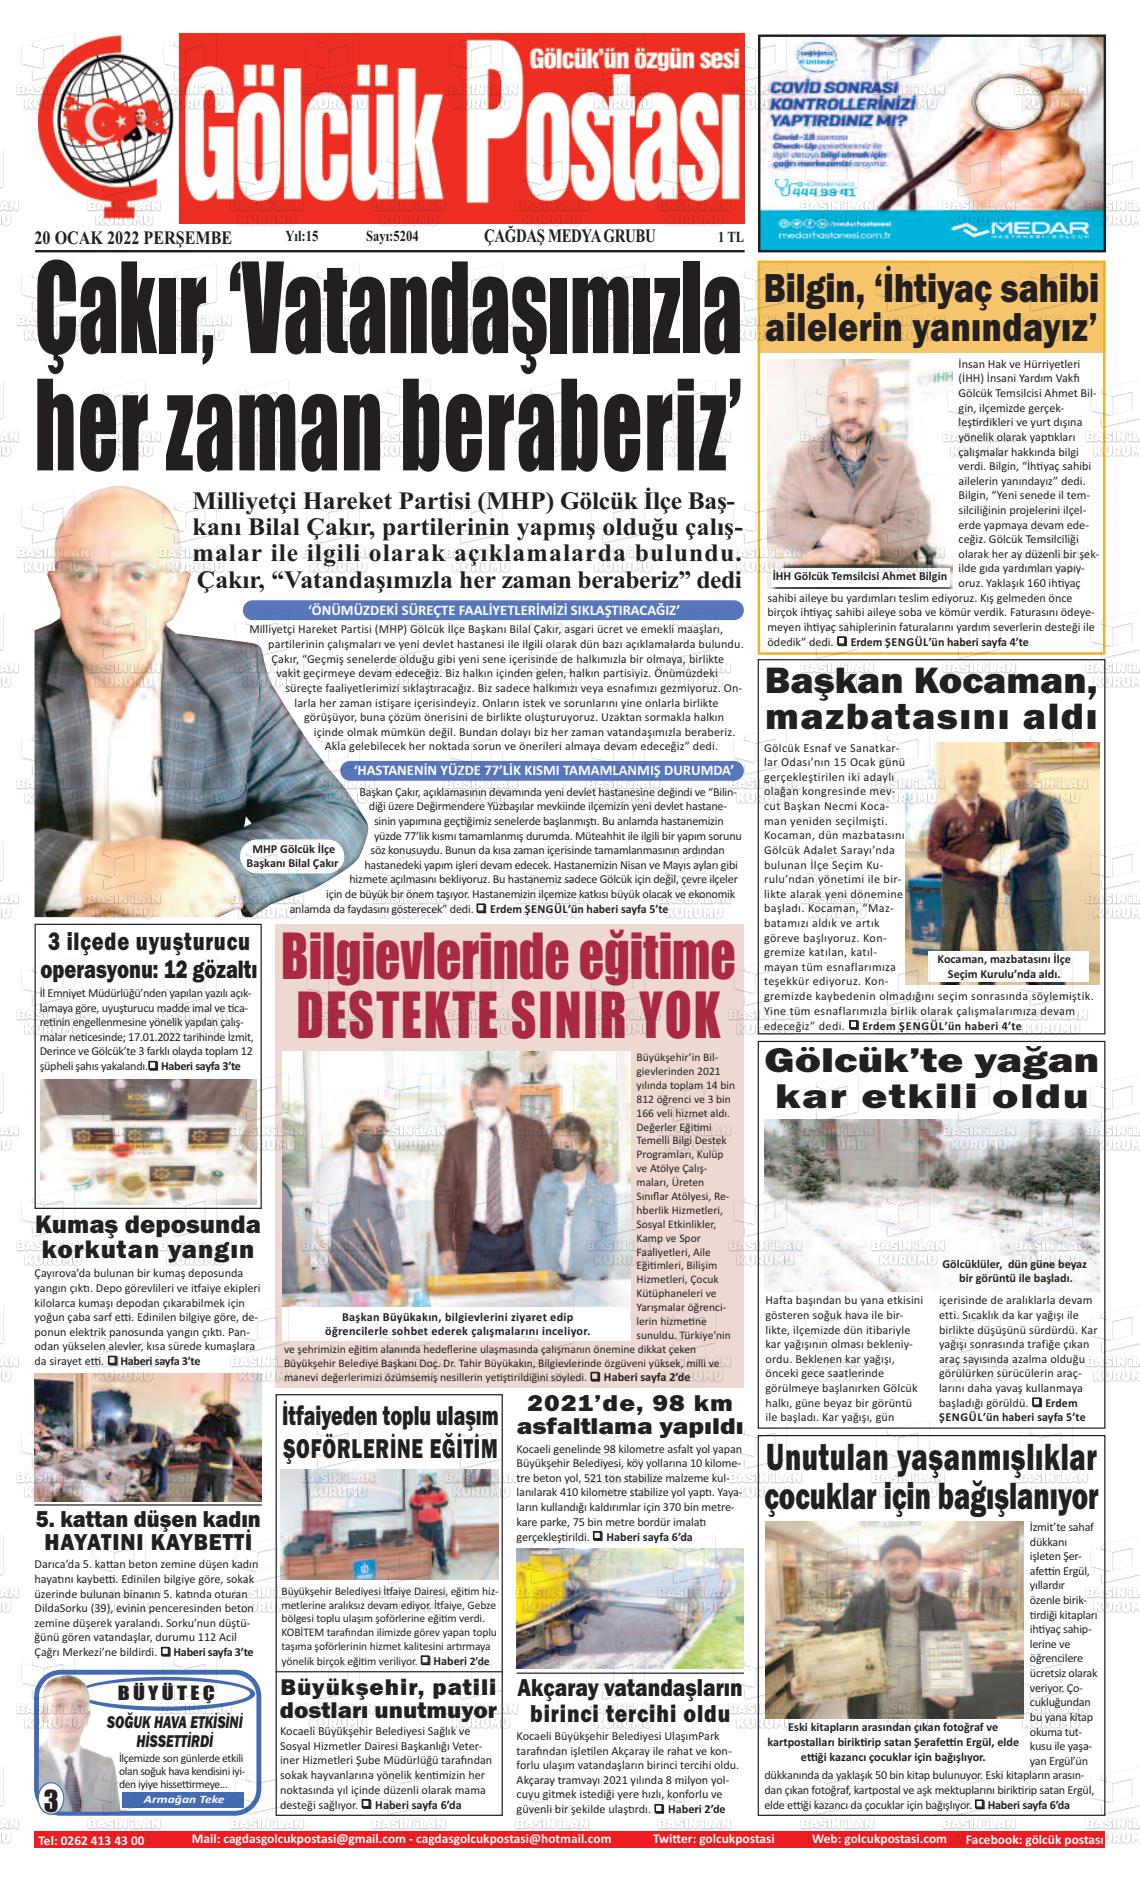 20 Ocak 2022 Gölcük Postasi Gazete Manşeti